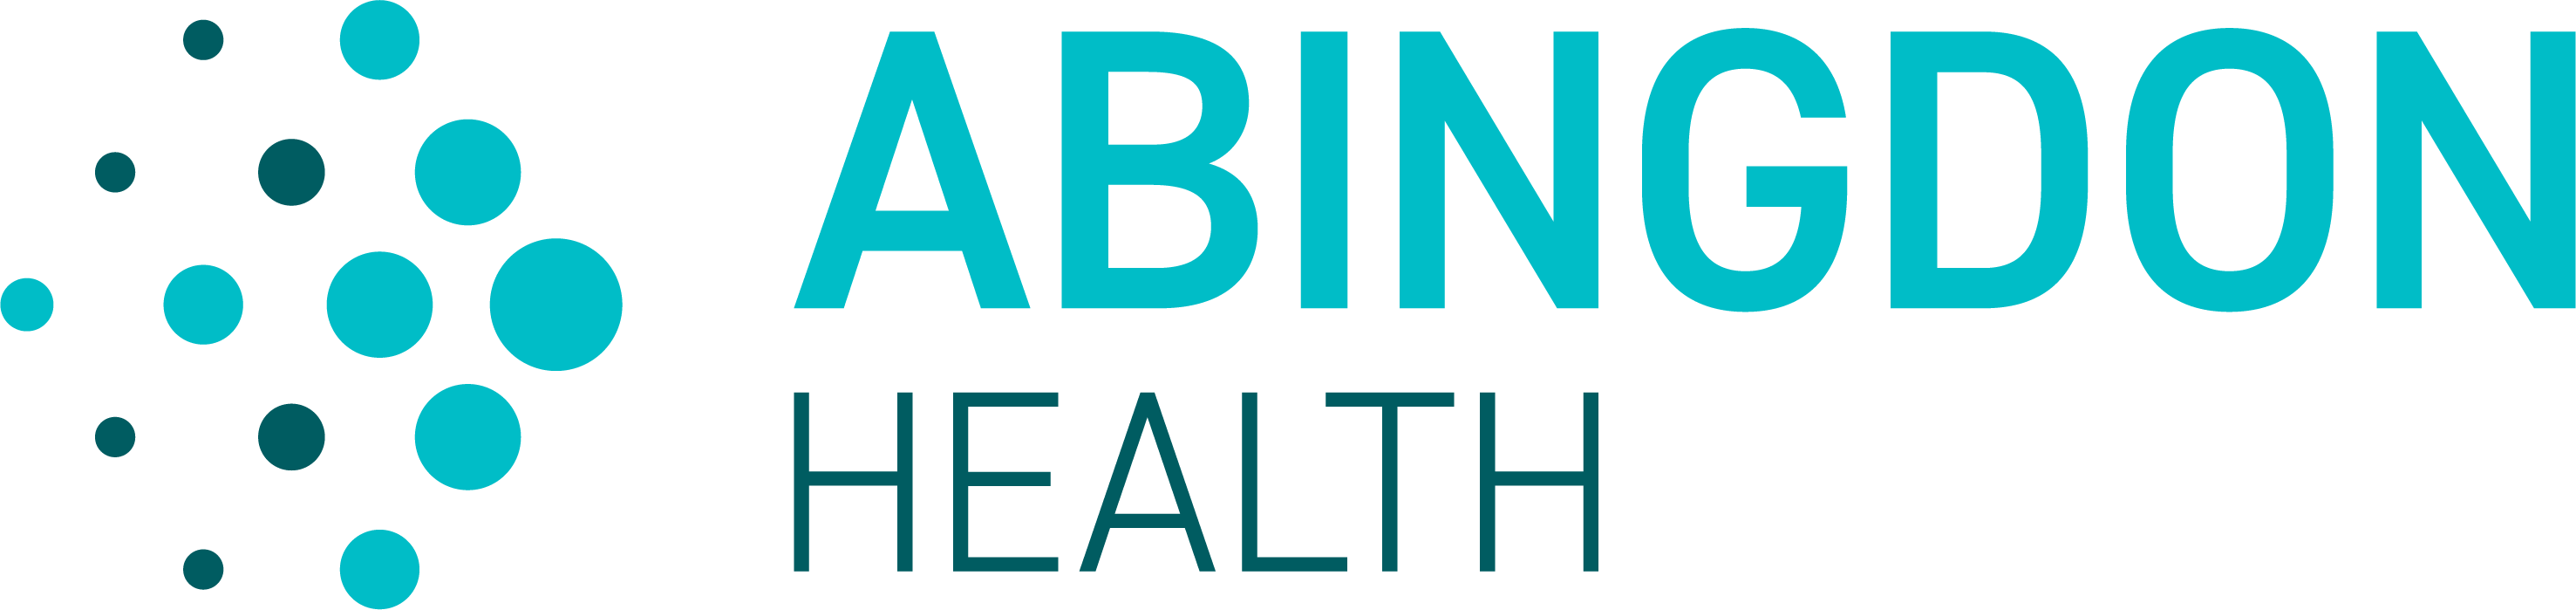 Abingdon Health plc